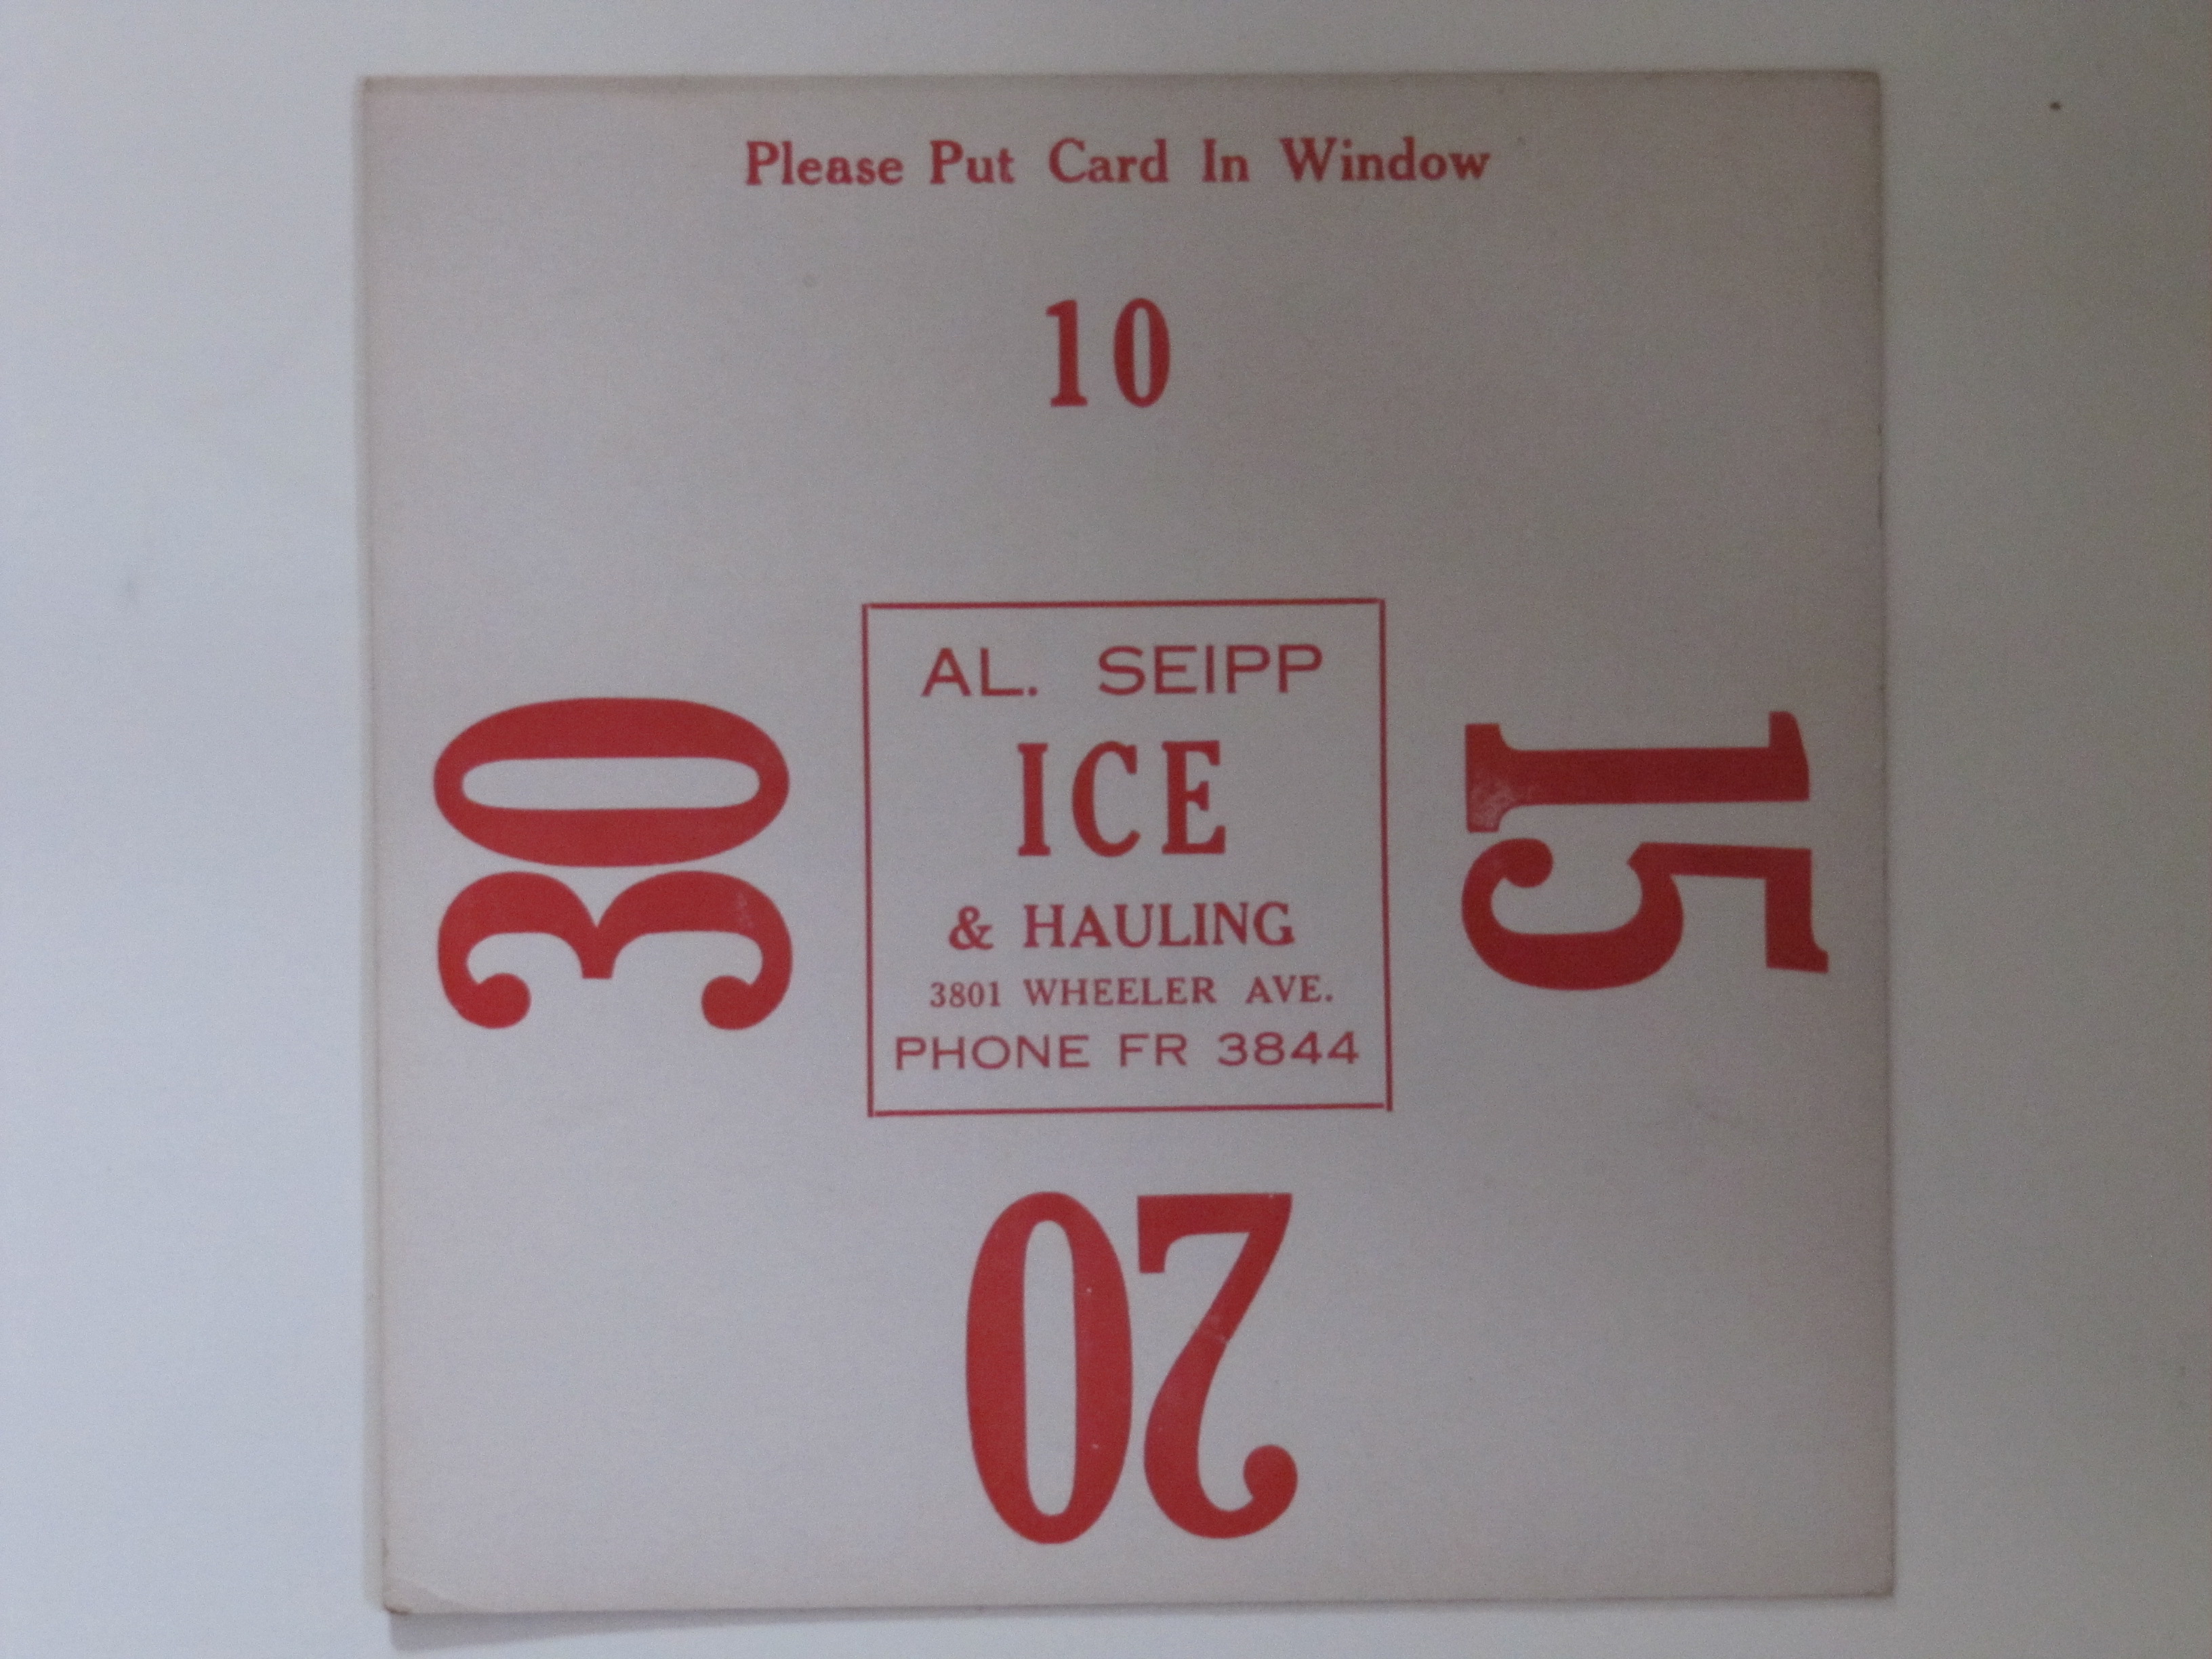 AL. Seipp Ice